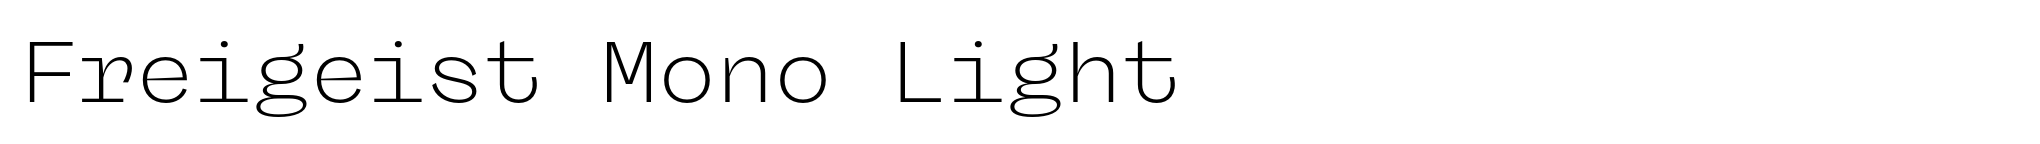 Freigeist Mono Light image